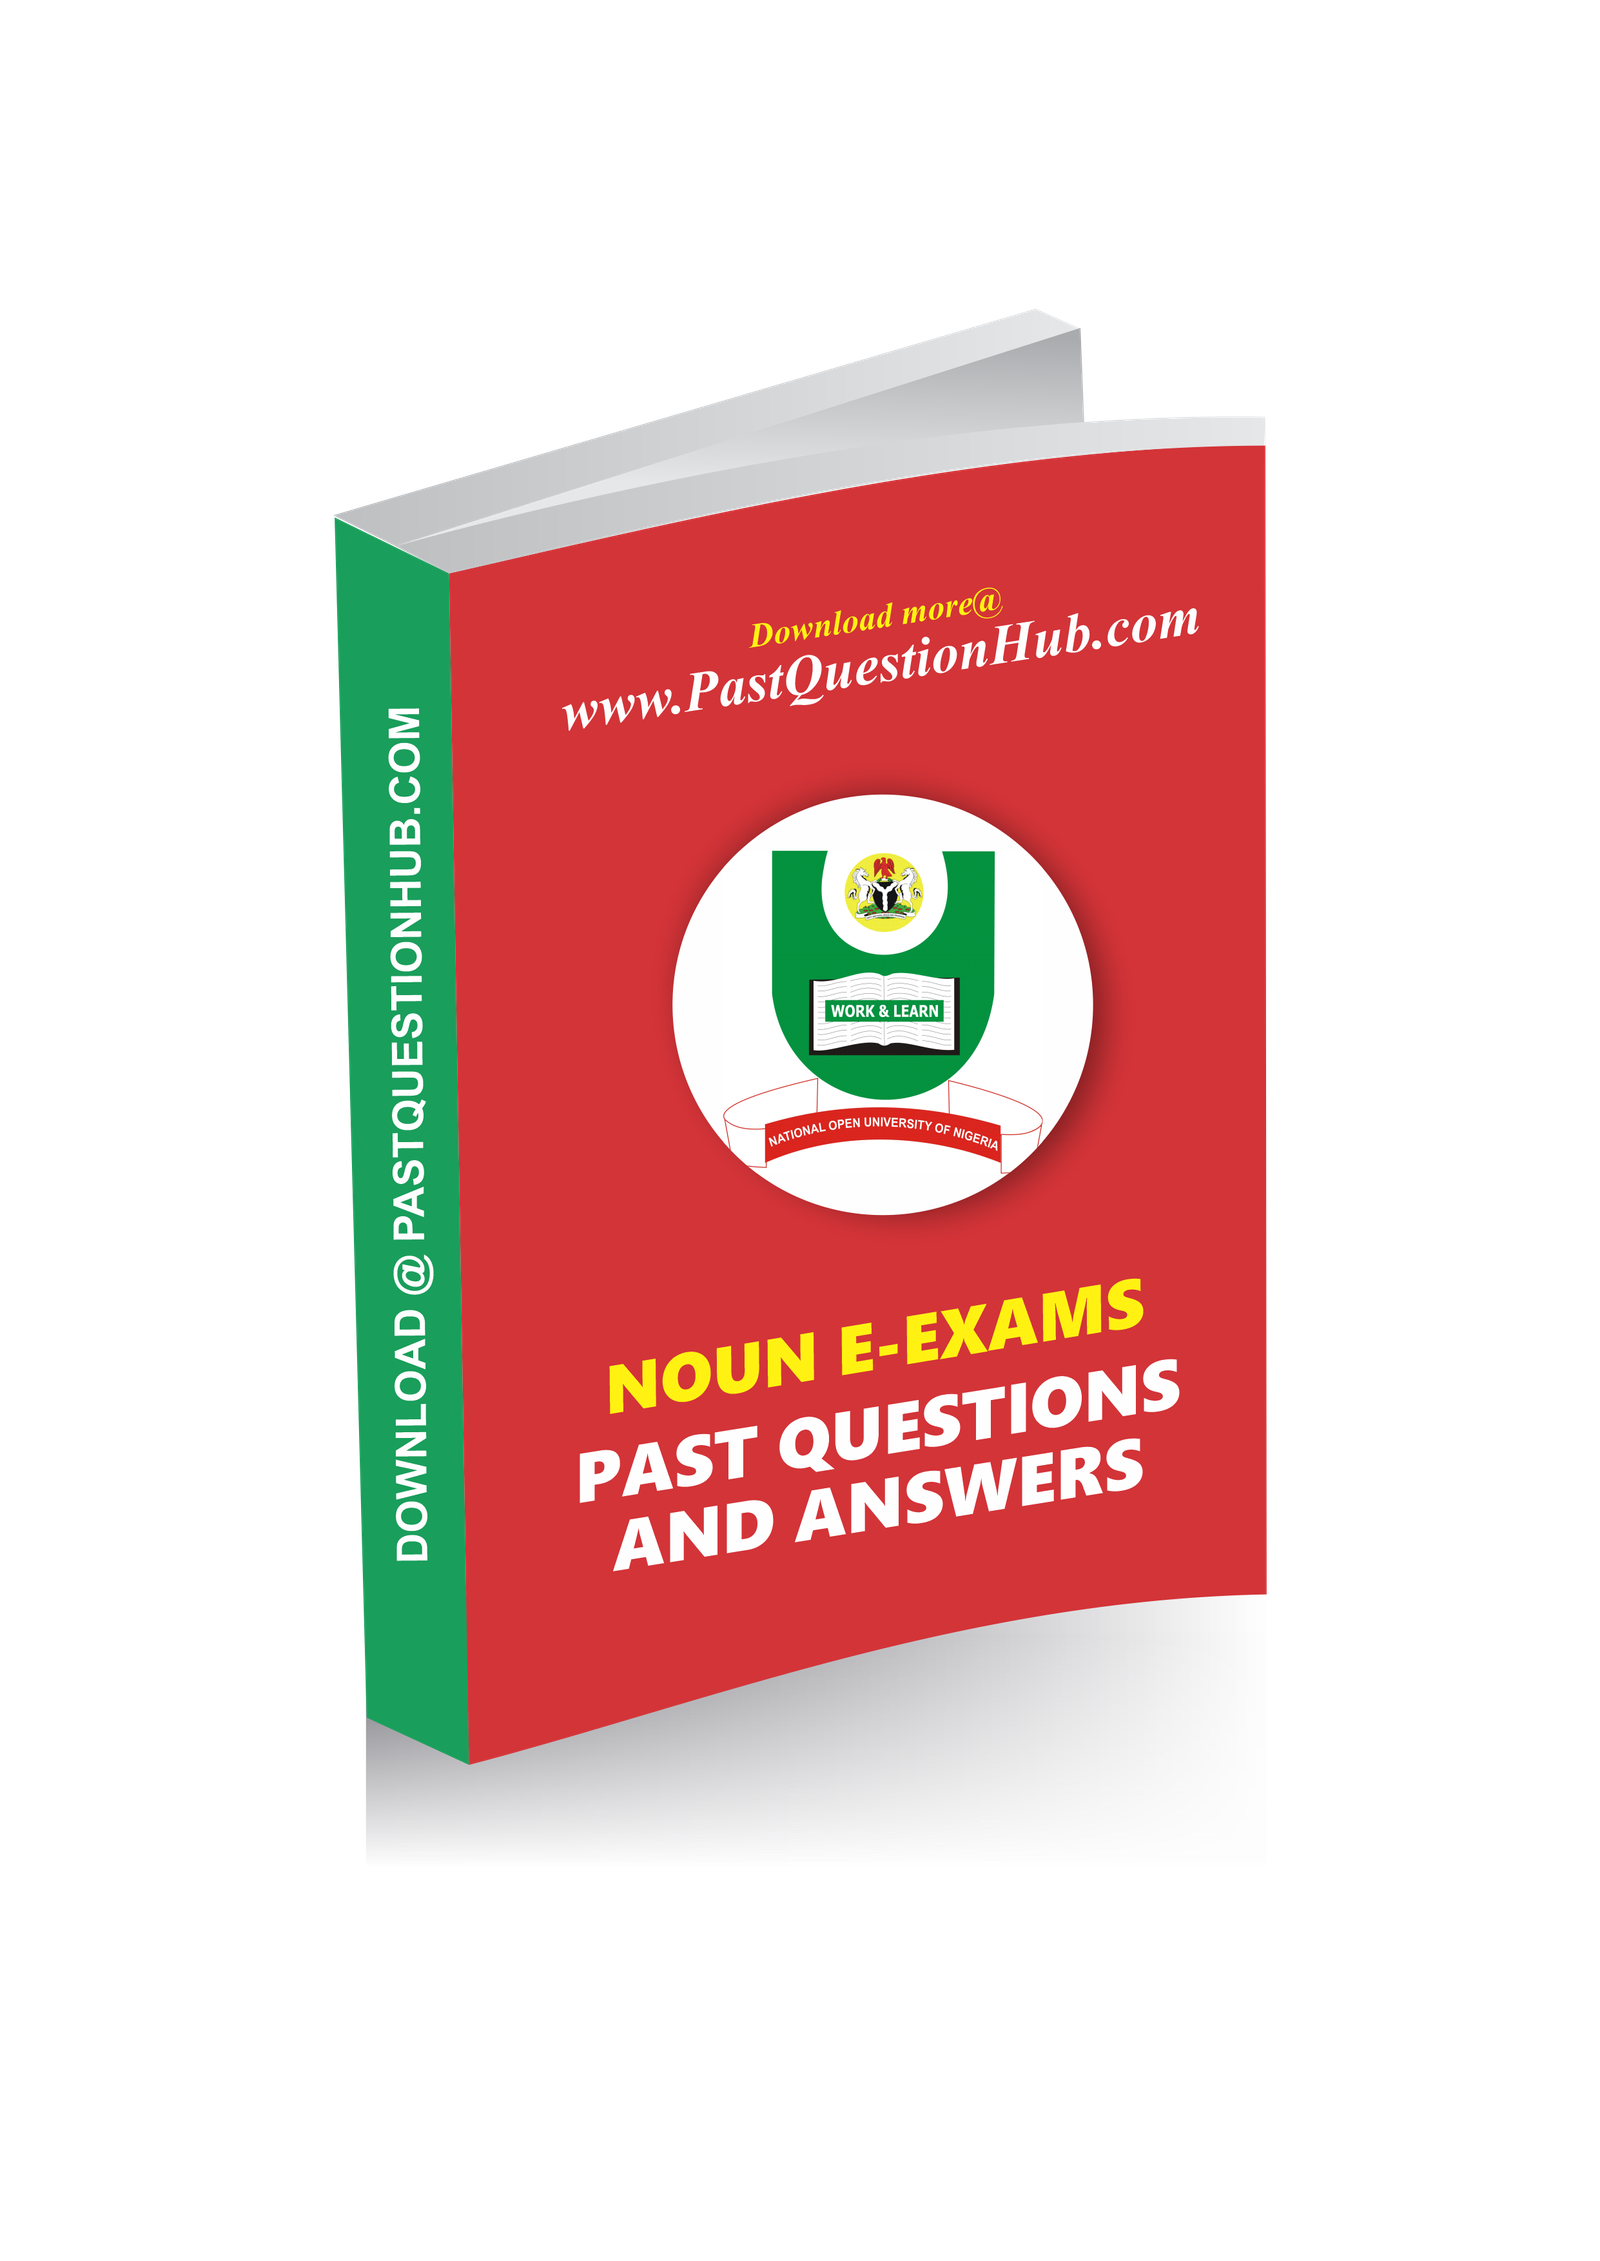 Noun E-Exams Past Questions